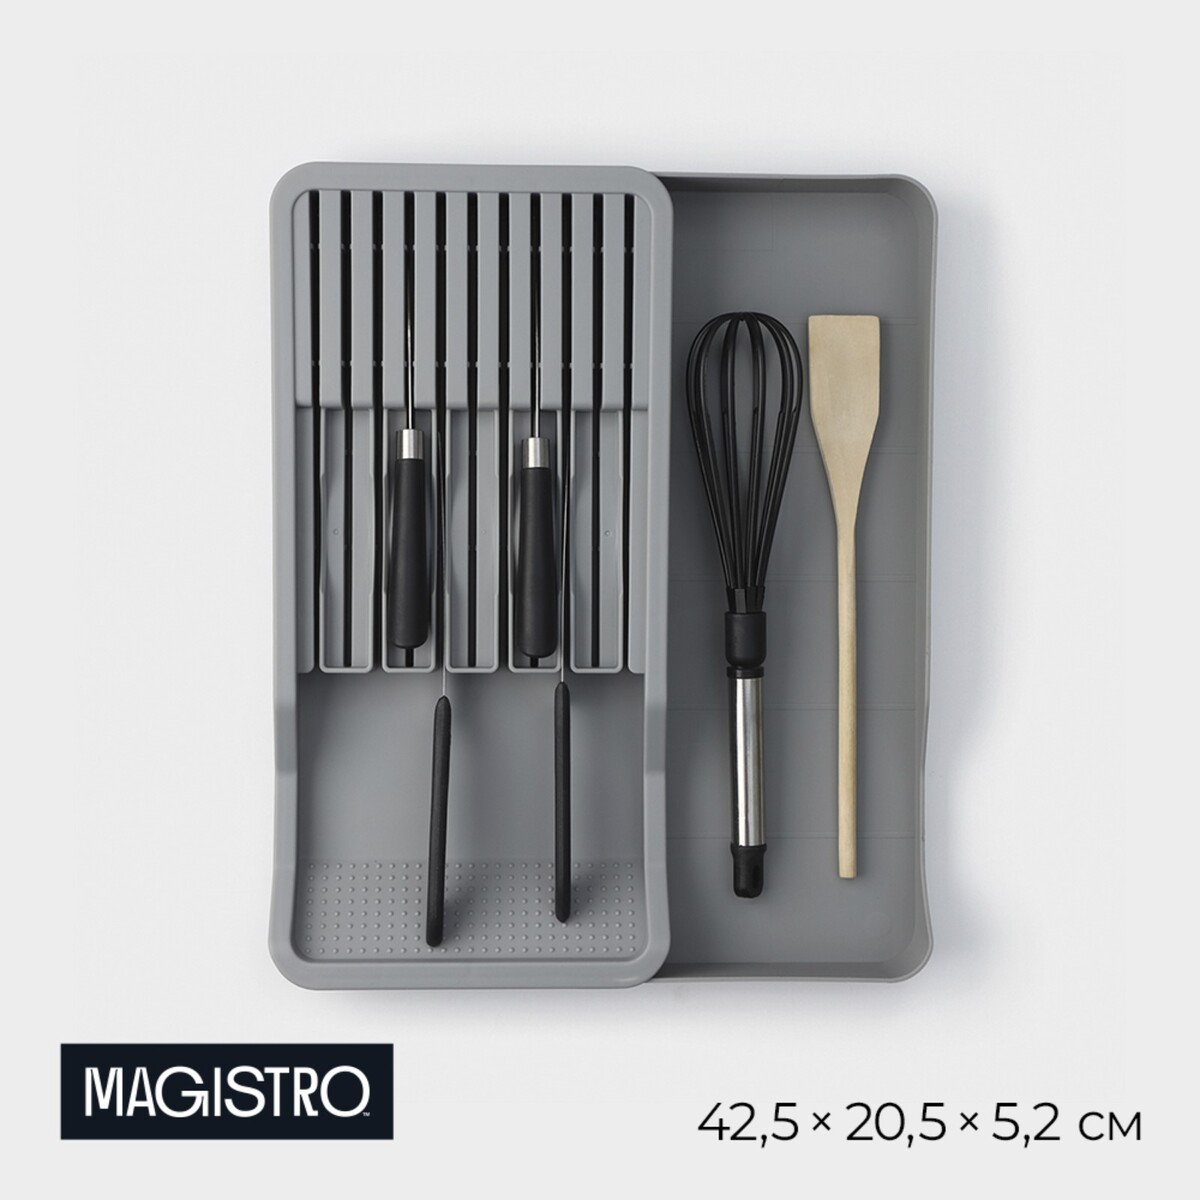 Подставка для кухонных приборов magistro harm, 42,5×20,5×5,2 см, раздвижная, цвет серый подставка для ножей и ножниц magistro